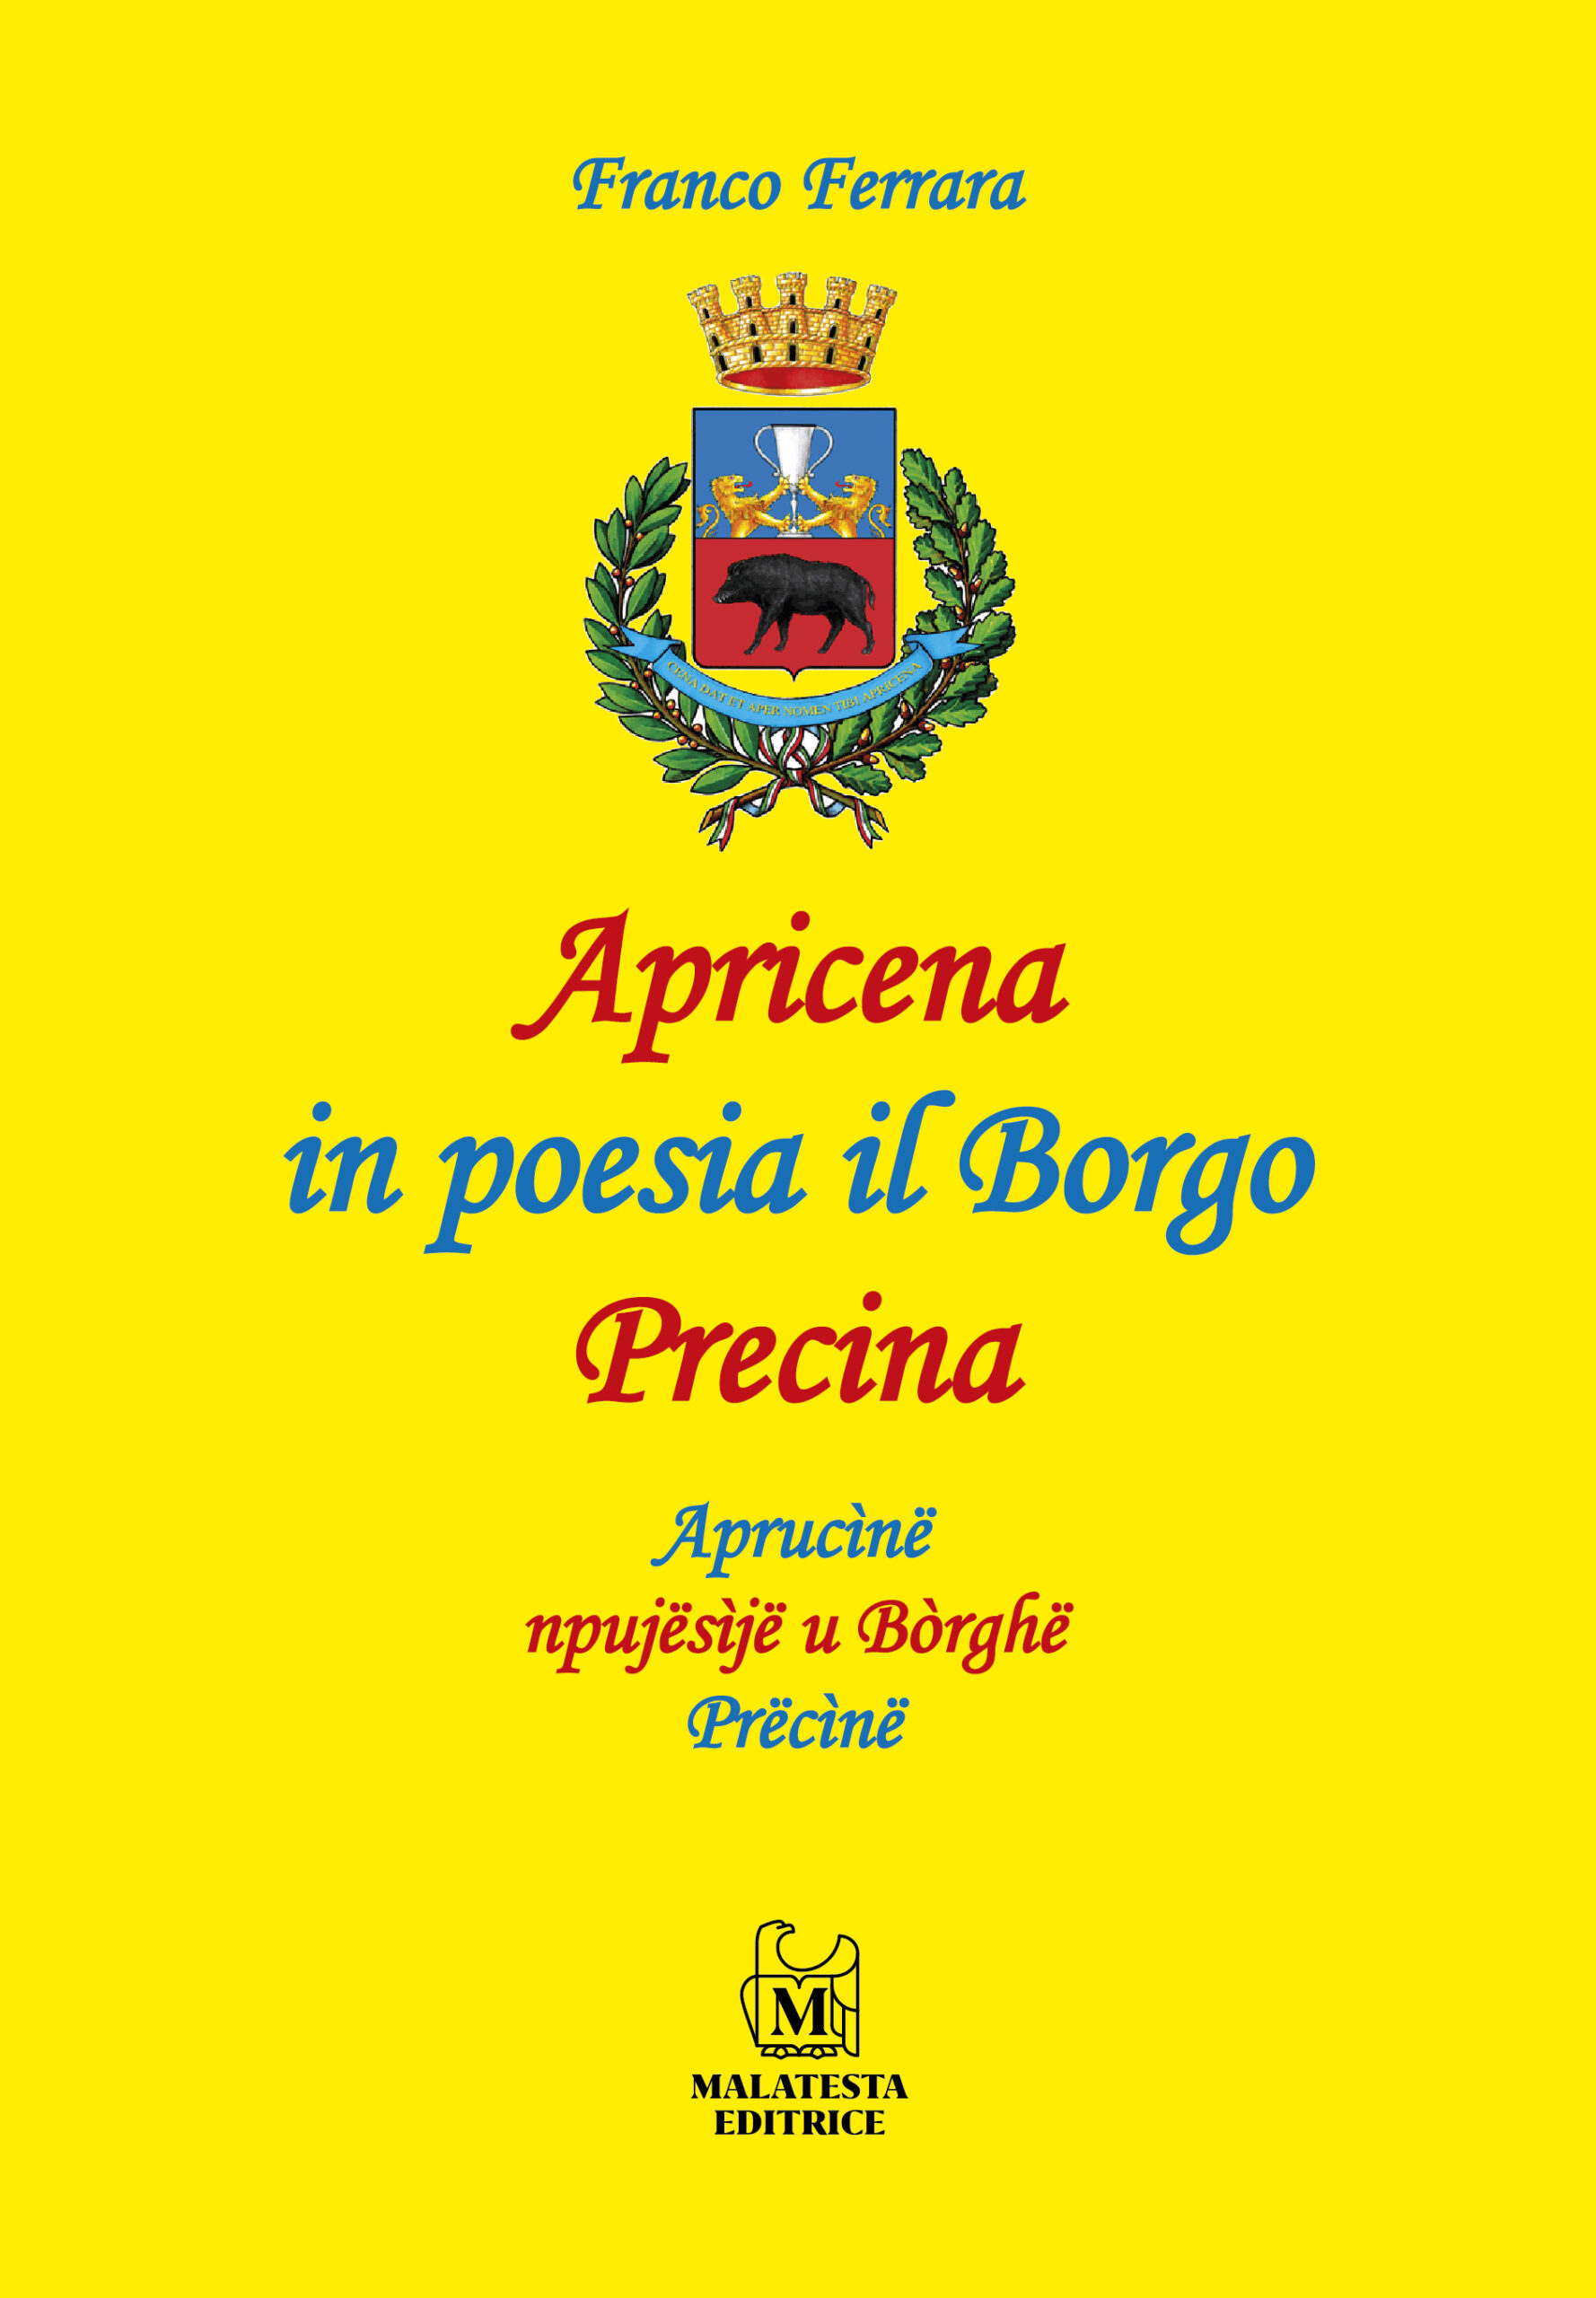 Apricena in poesia il Borgo Precina - Aprucìnë npujësìjë u Bòrghë Prëcìnë